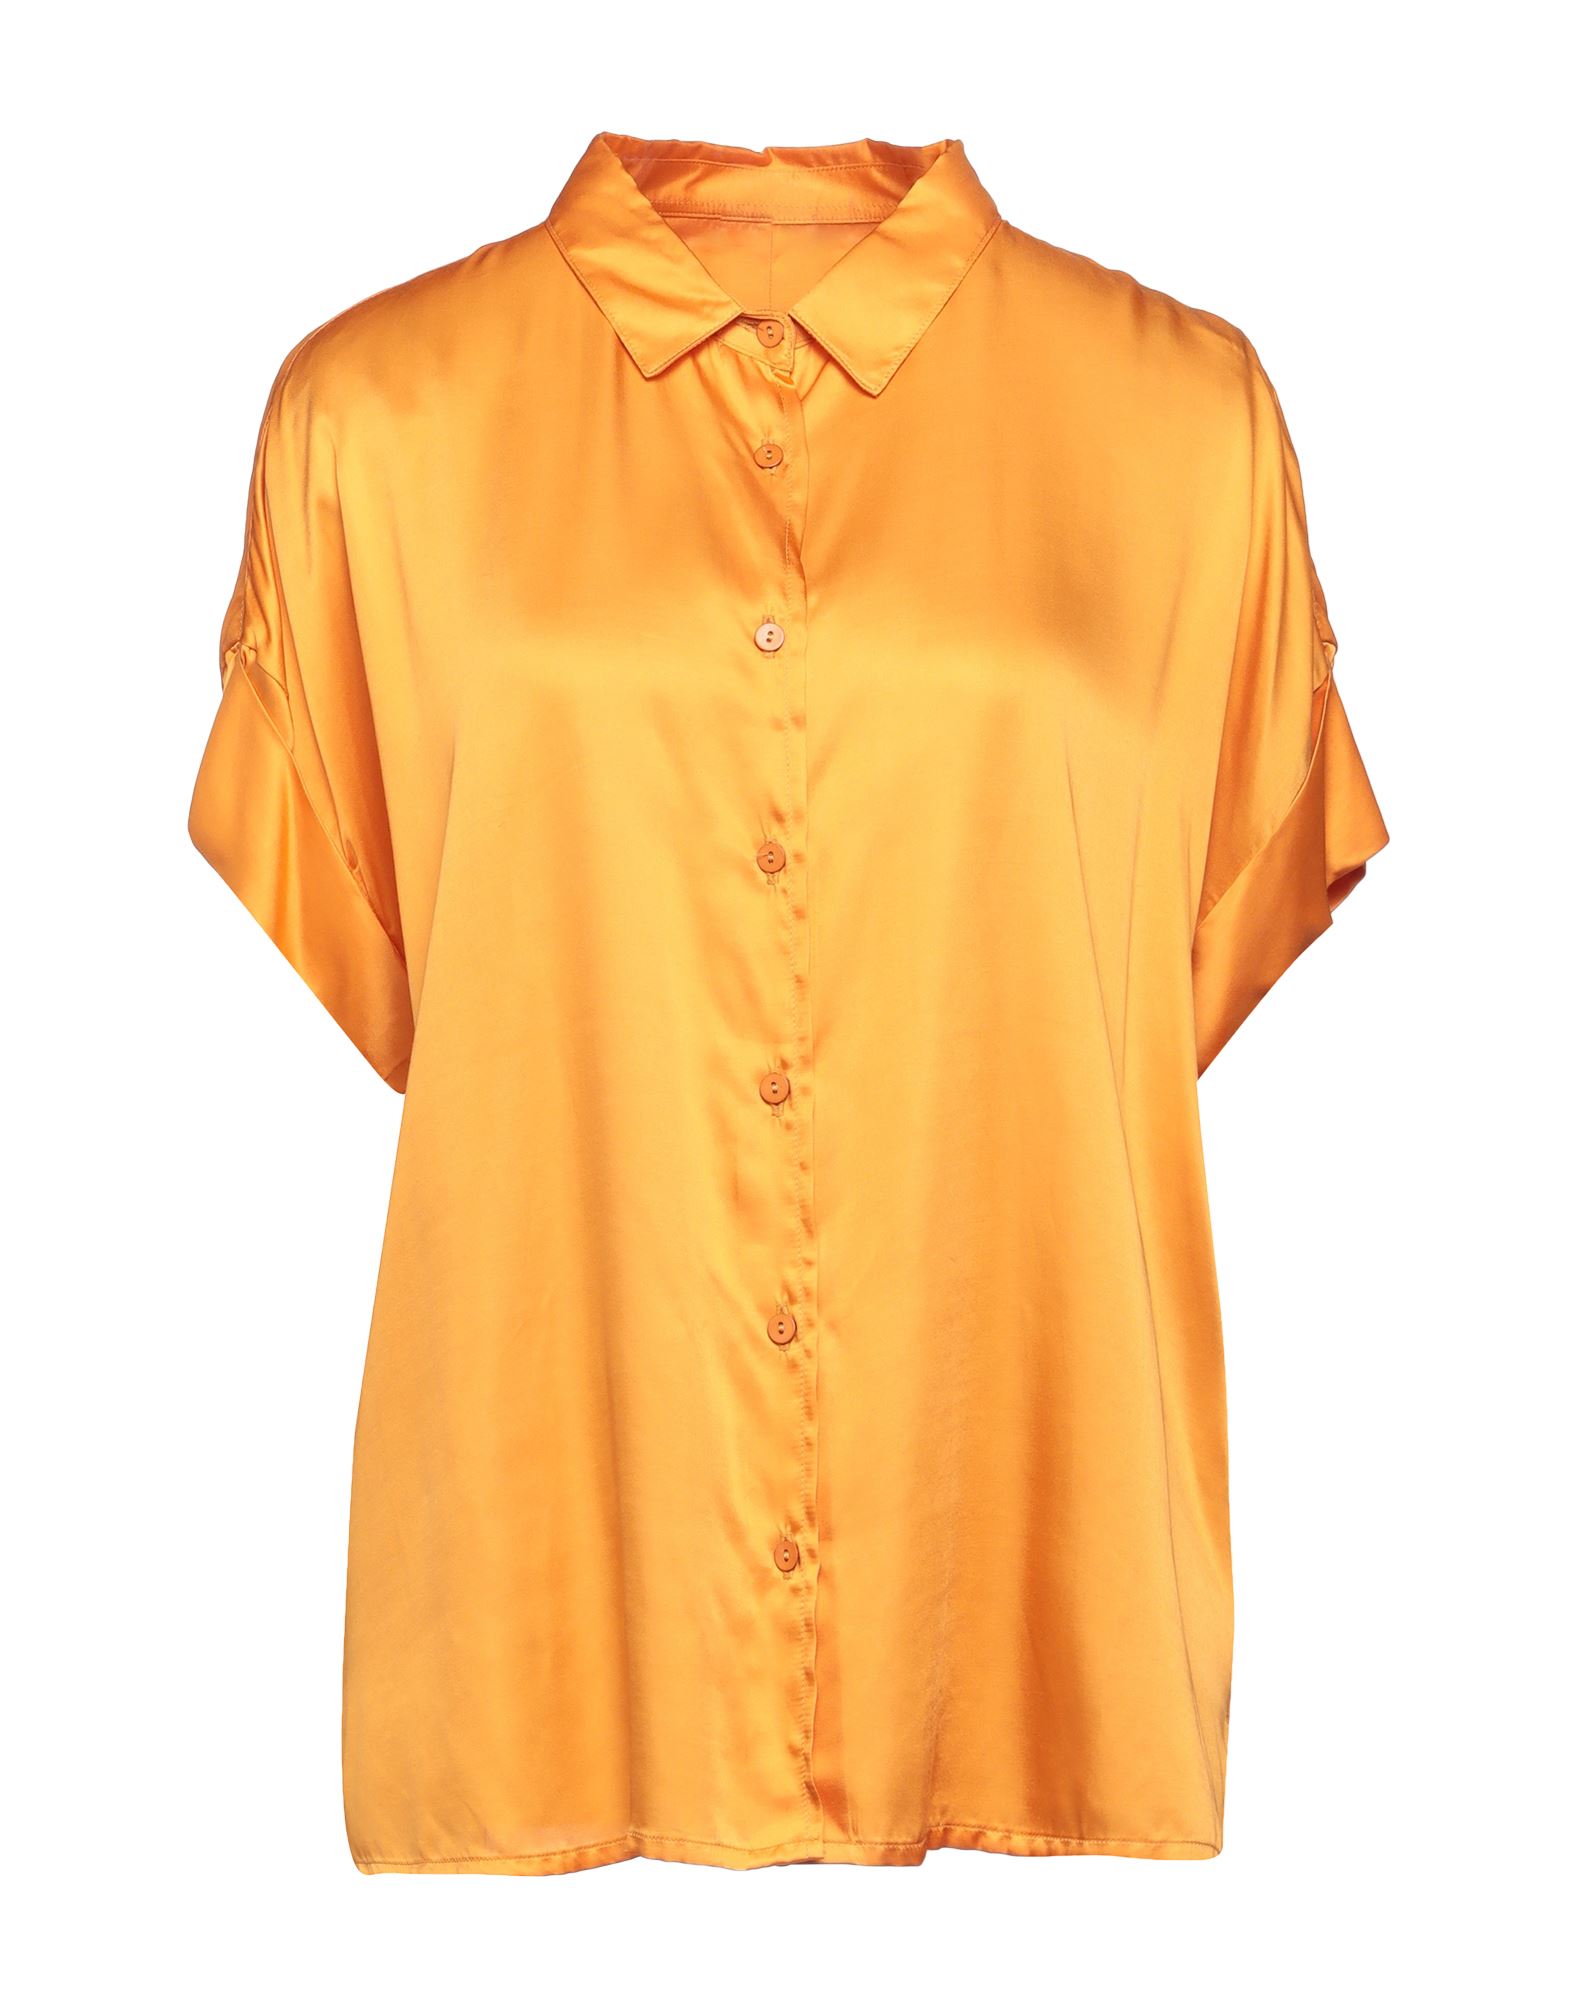 Rossopuro Shirts In Orange